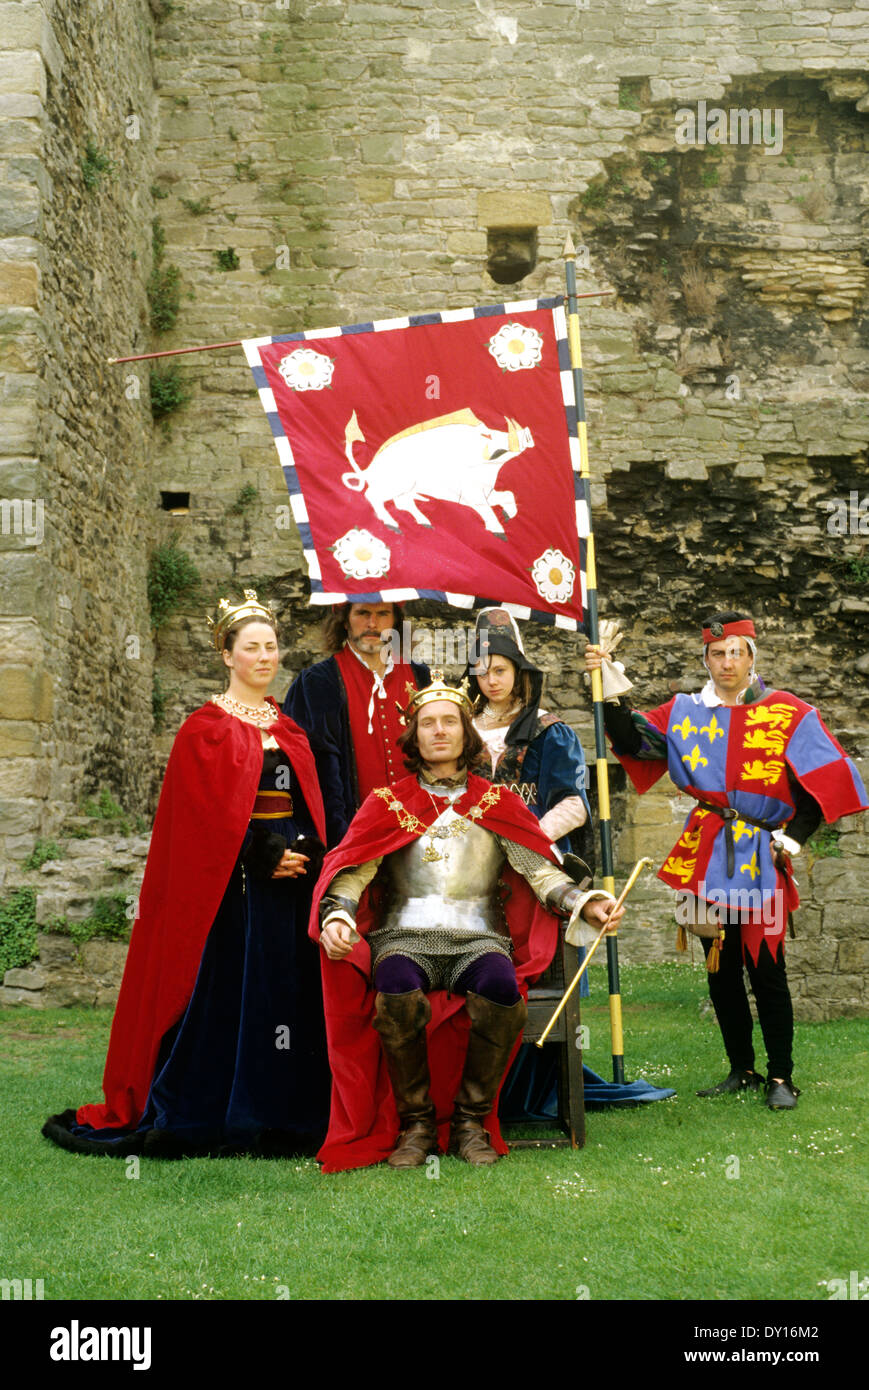 Le roi Richard 3e troisième, fin du 15e siècle médiéval reconstitution historique, Château de Middleham costumes costume armor armor Yorkshire Angleterre UK Boar tête de sanglier bannière drapeau armoiries Banque D'Images